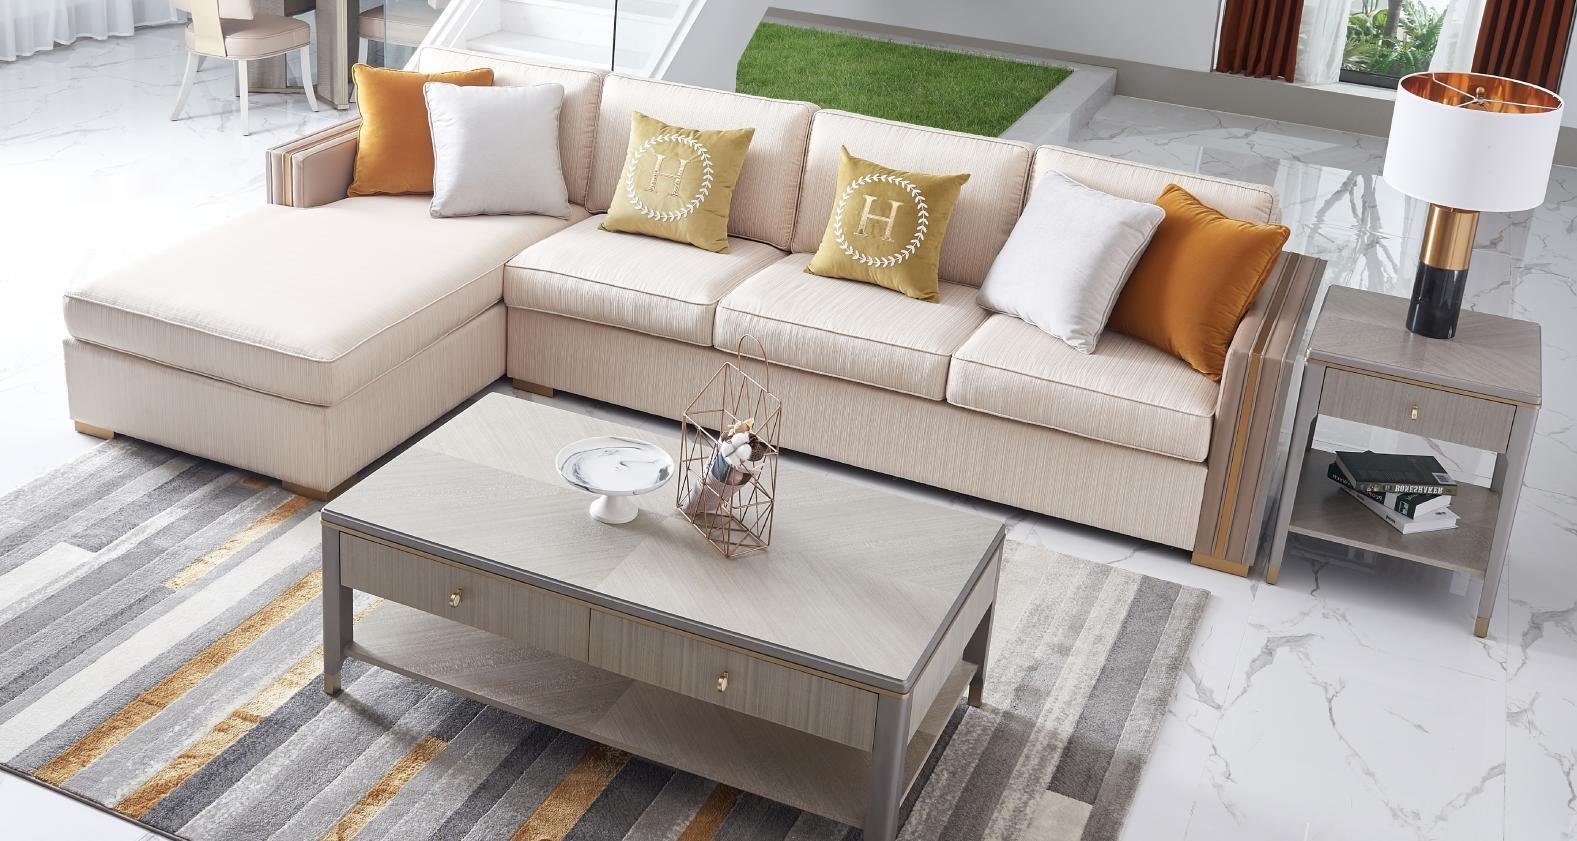 Eck JVmoebel Sofa, Europe Design Ecksofa in Made Luxus Wohnlandschaft Textil Ecksofa